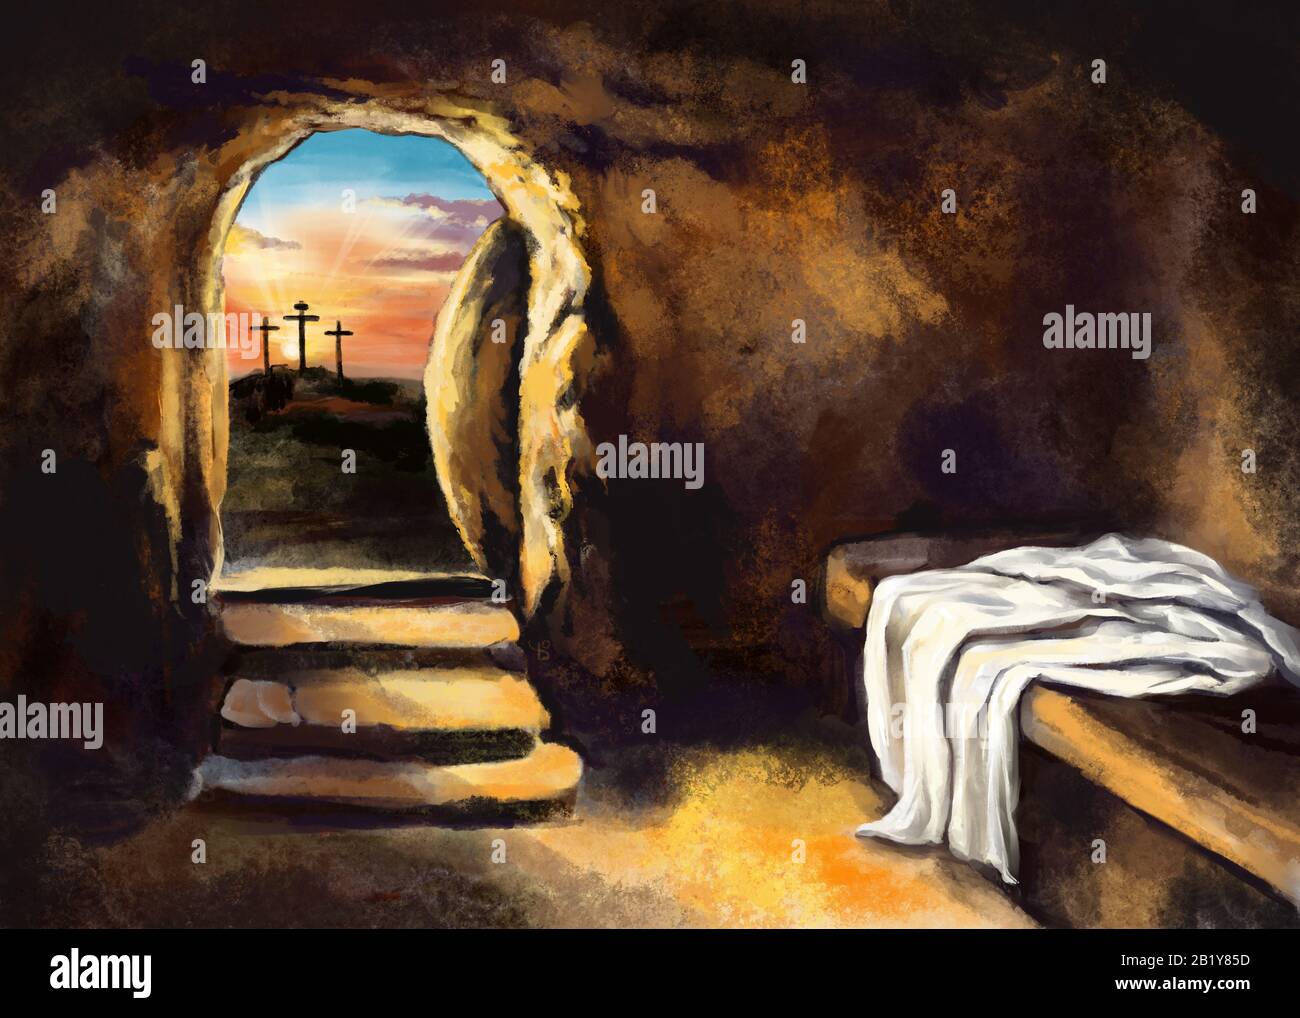 Pâques Jésus Christ est passé des morts. Dimanche matin. Aube. Le tombeau vide à l'arrière-plan de la crucifixion. Joyeuses pâques. Symbole chrétien de f Banque D'Images